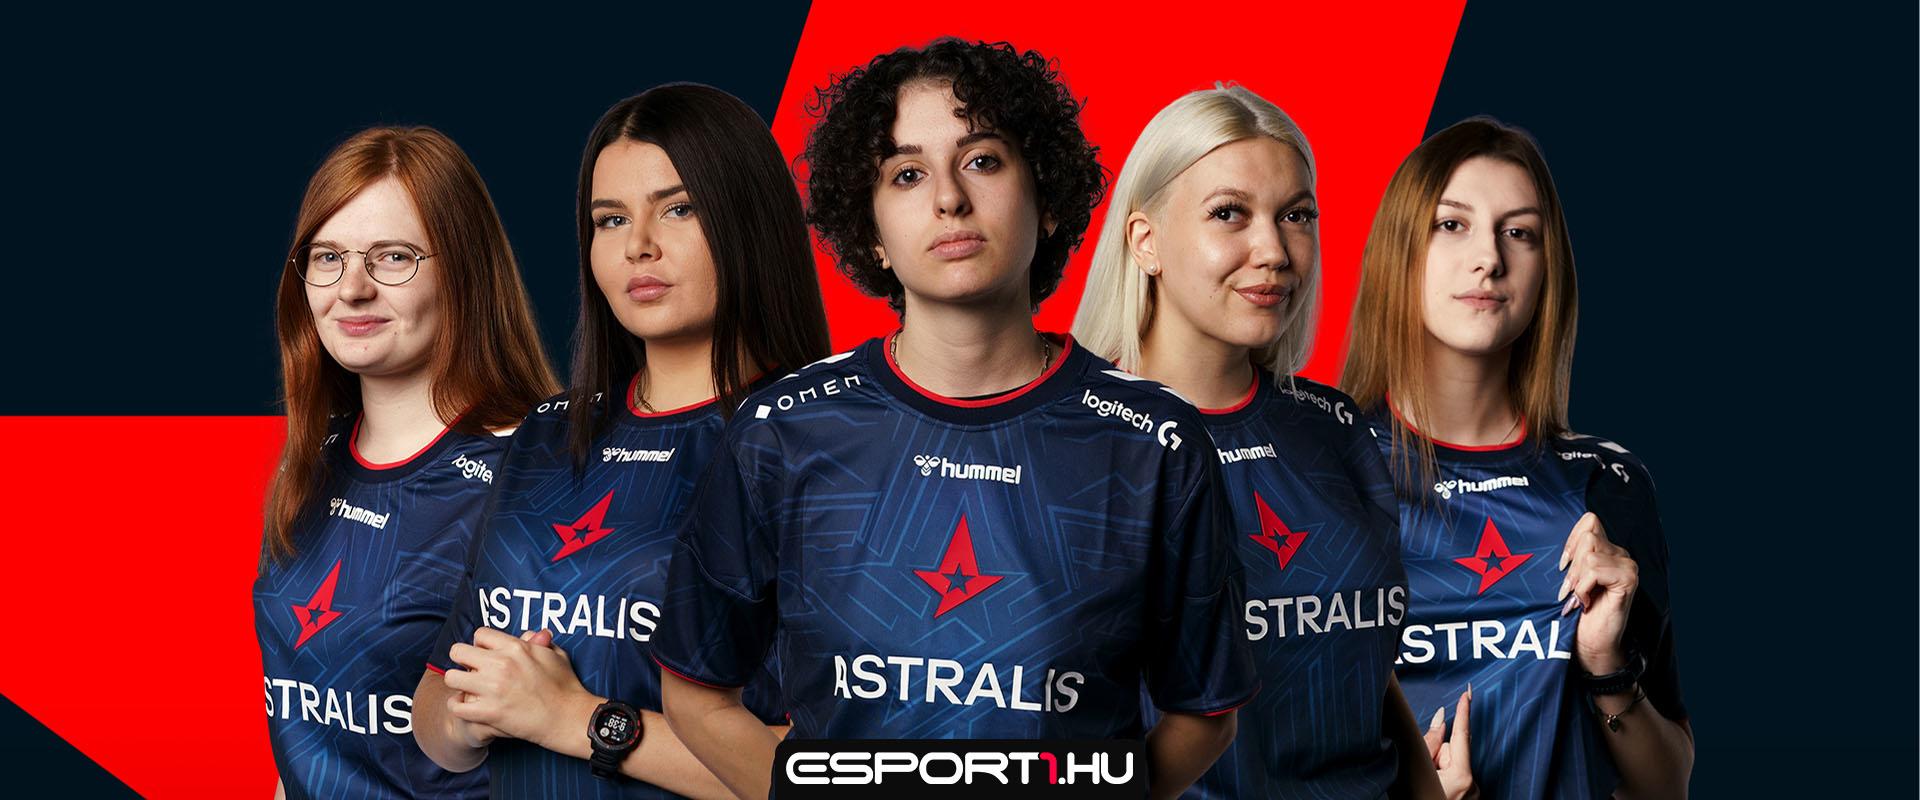 Magyar játékossal vág bele a női CS-be az Astralis